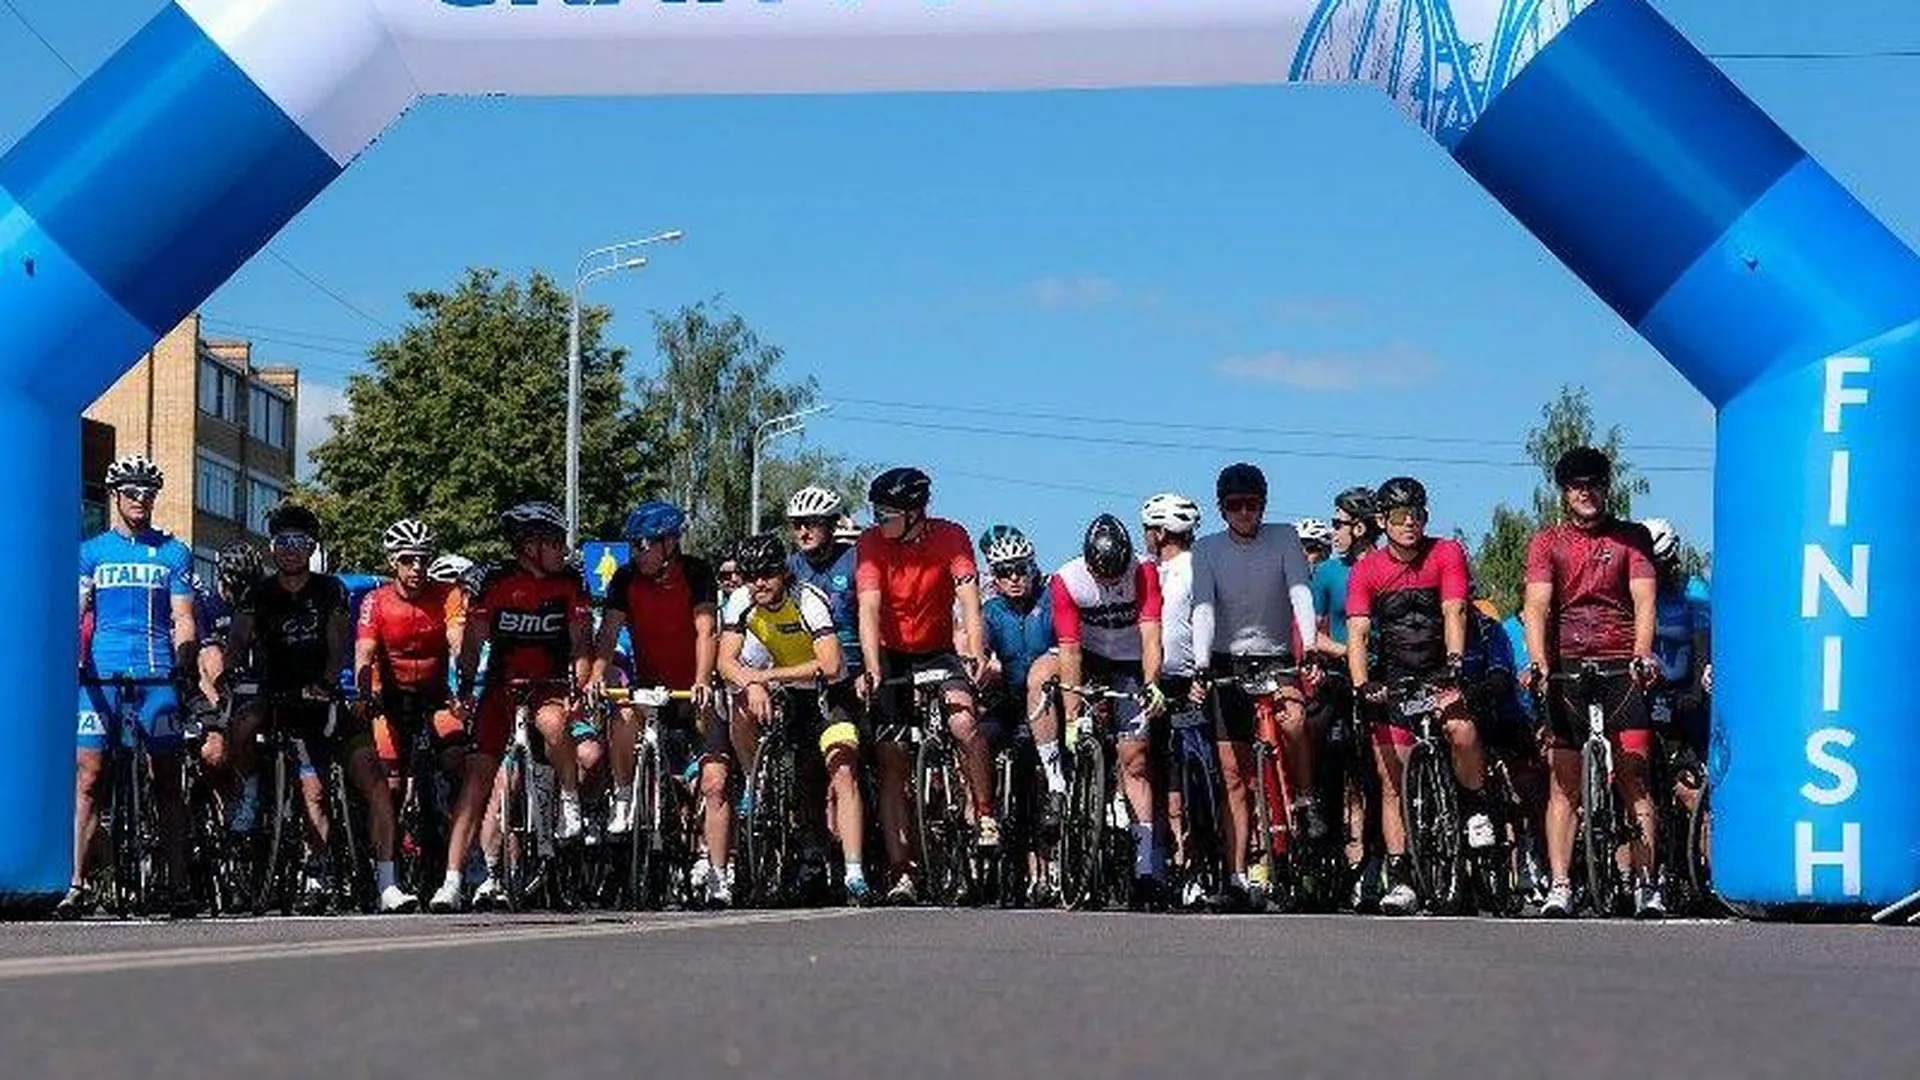 Более 1 тысячи человек приняли участие в велозаезде Gran Fondo в Лотошино